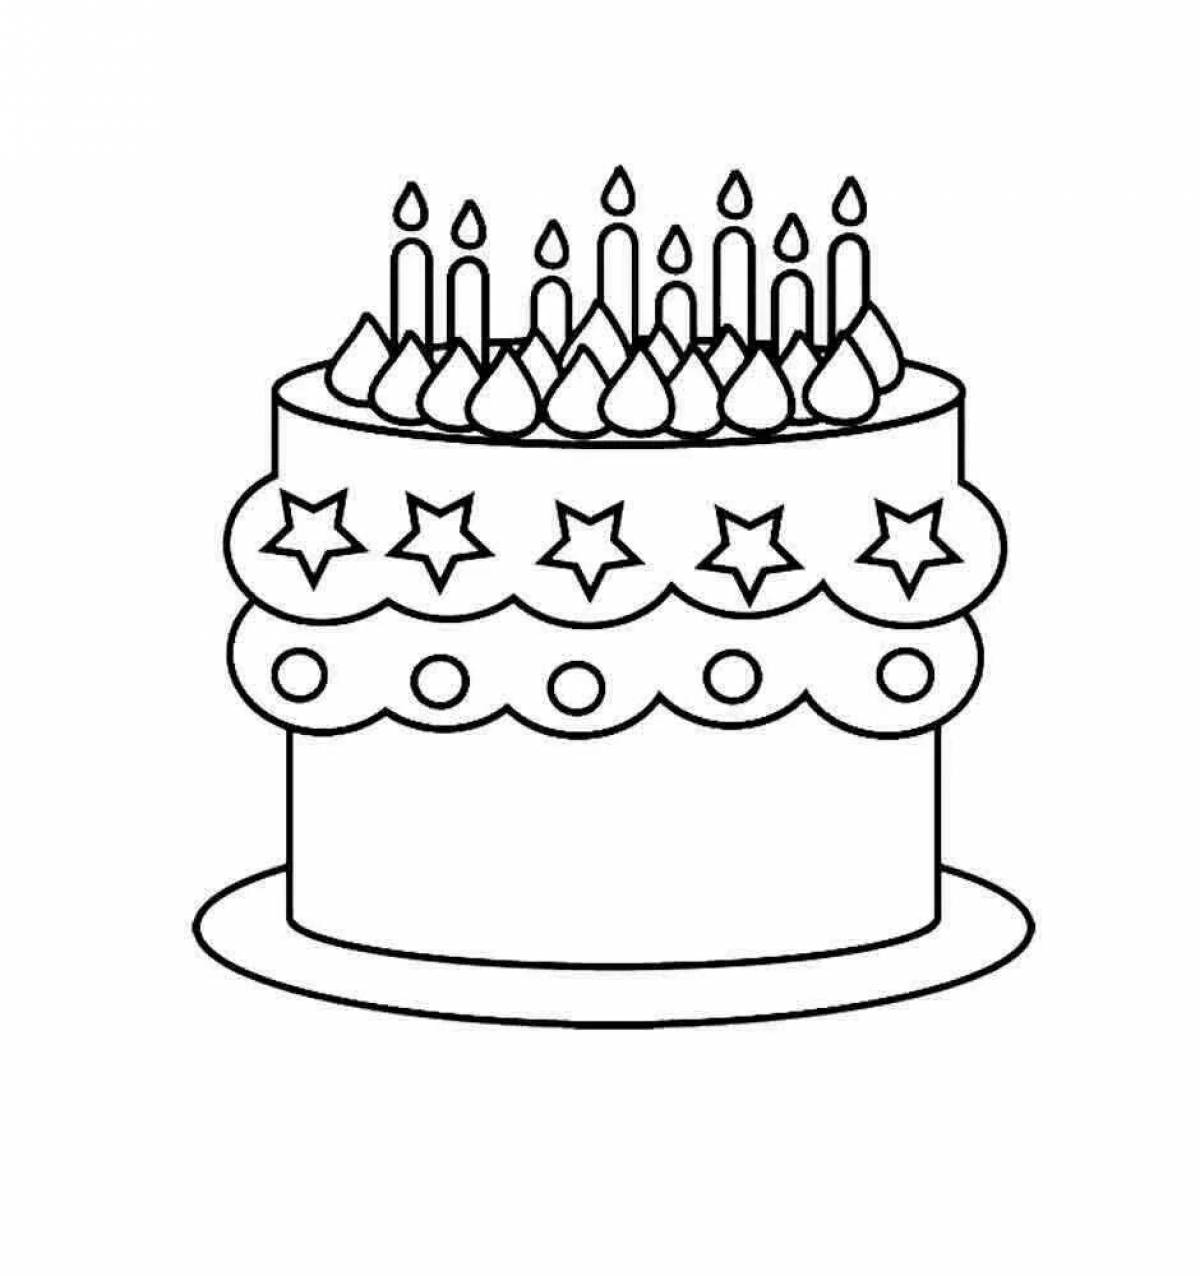 Рисовать рисунки на день рождения. Раскраска торт. Раскраска тортик на день рождения. Торт раскраска для детей.